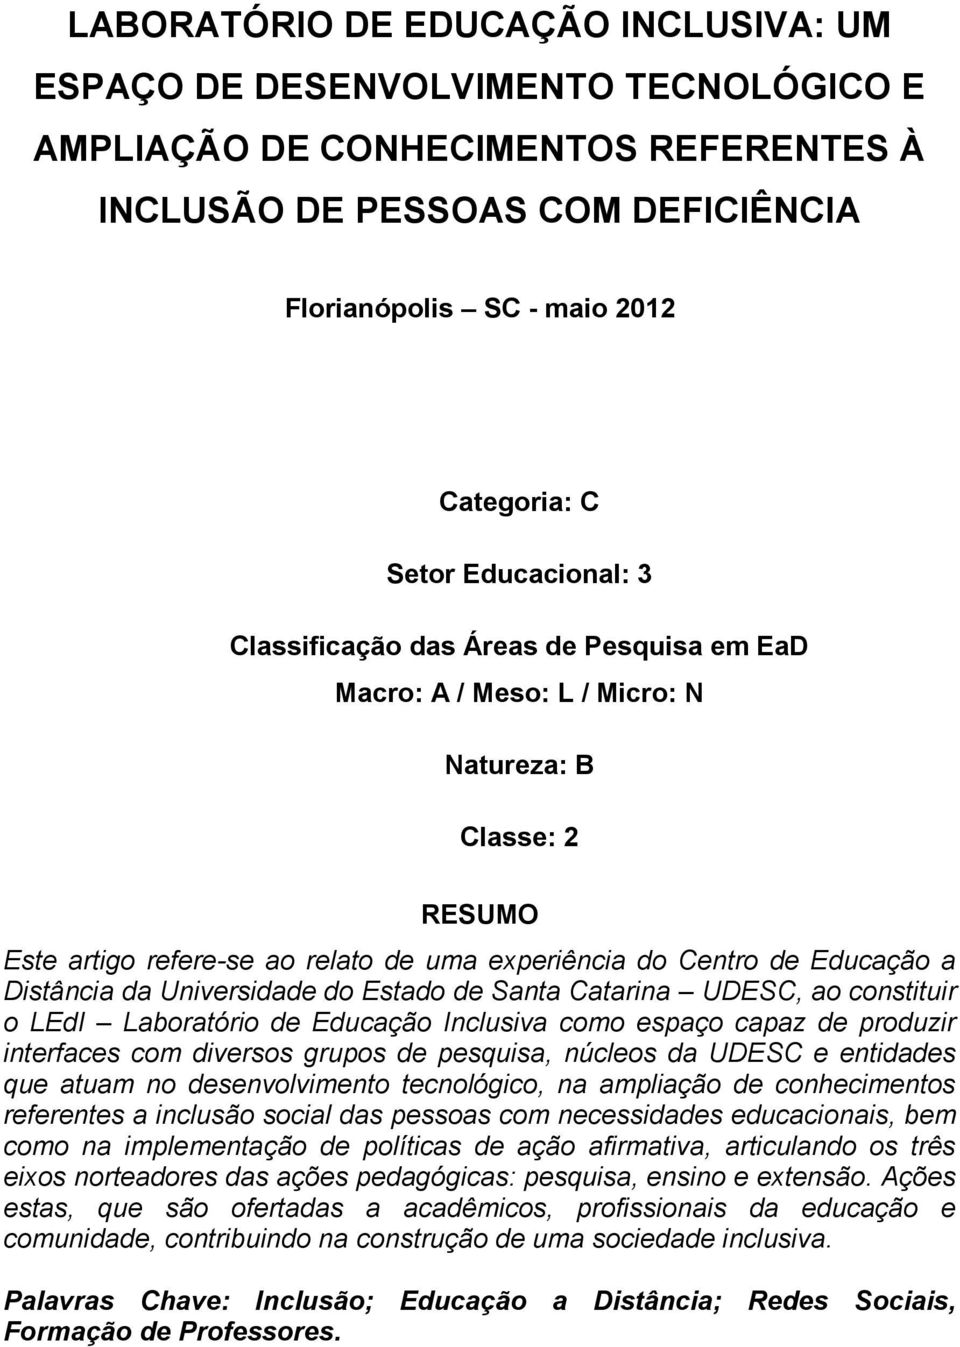 Distância da Universidade do Estado de Santa Catarina UDESC, ao constituir o LEdI Laboratório de Educação Inclusiva como espaço capaz de produzir interfaces com diversos grupos de pesquisa, núcleos